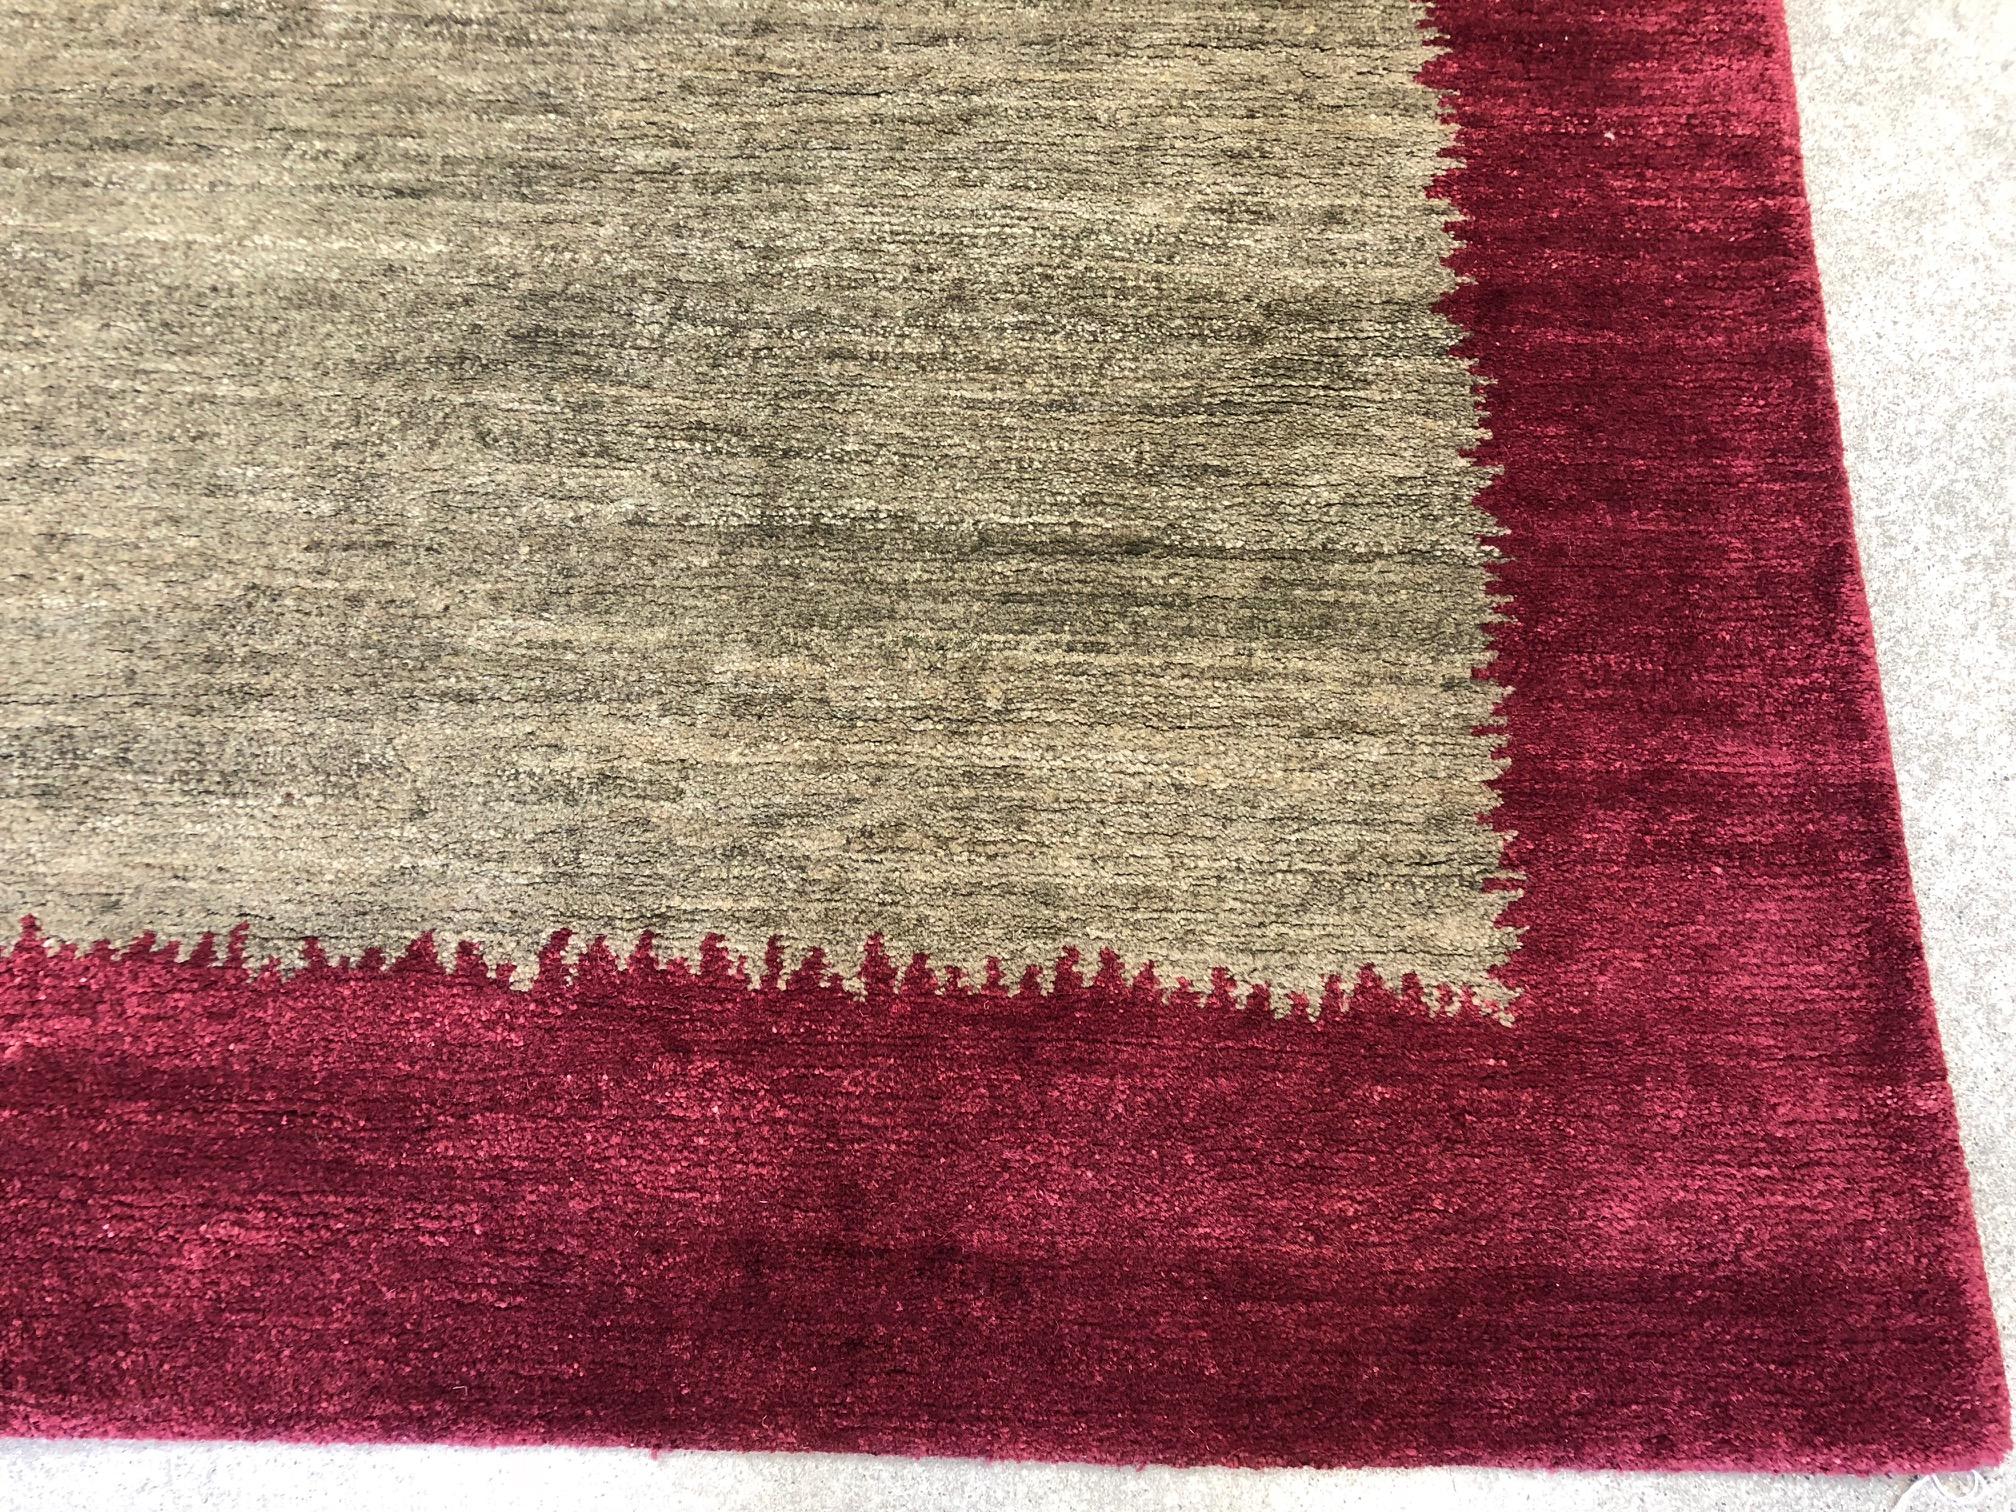 burgundy and teal rug